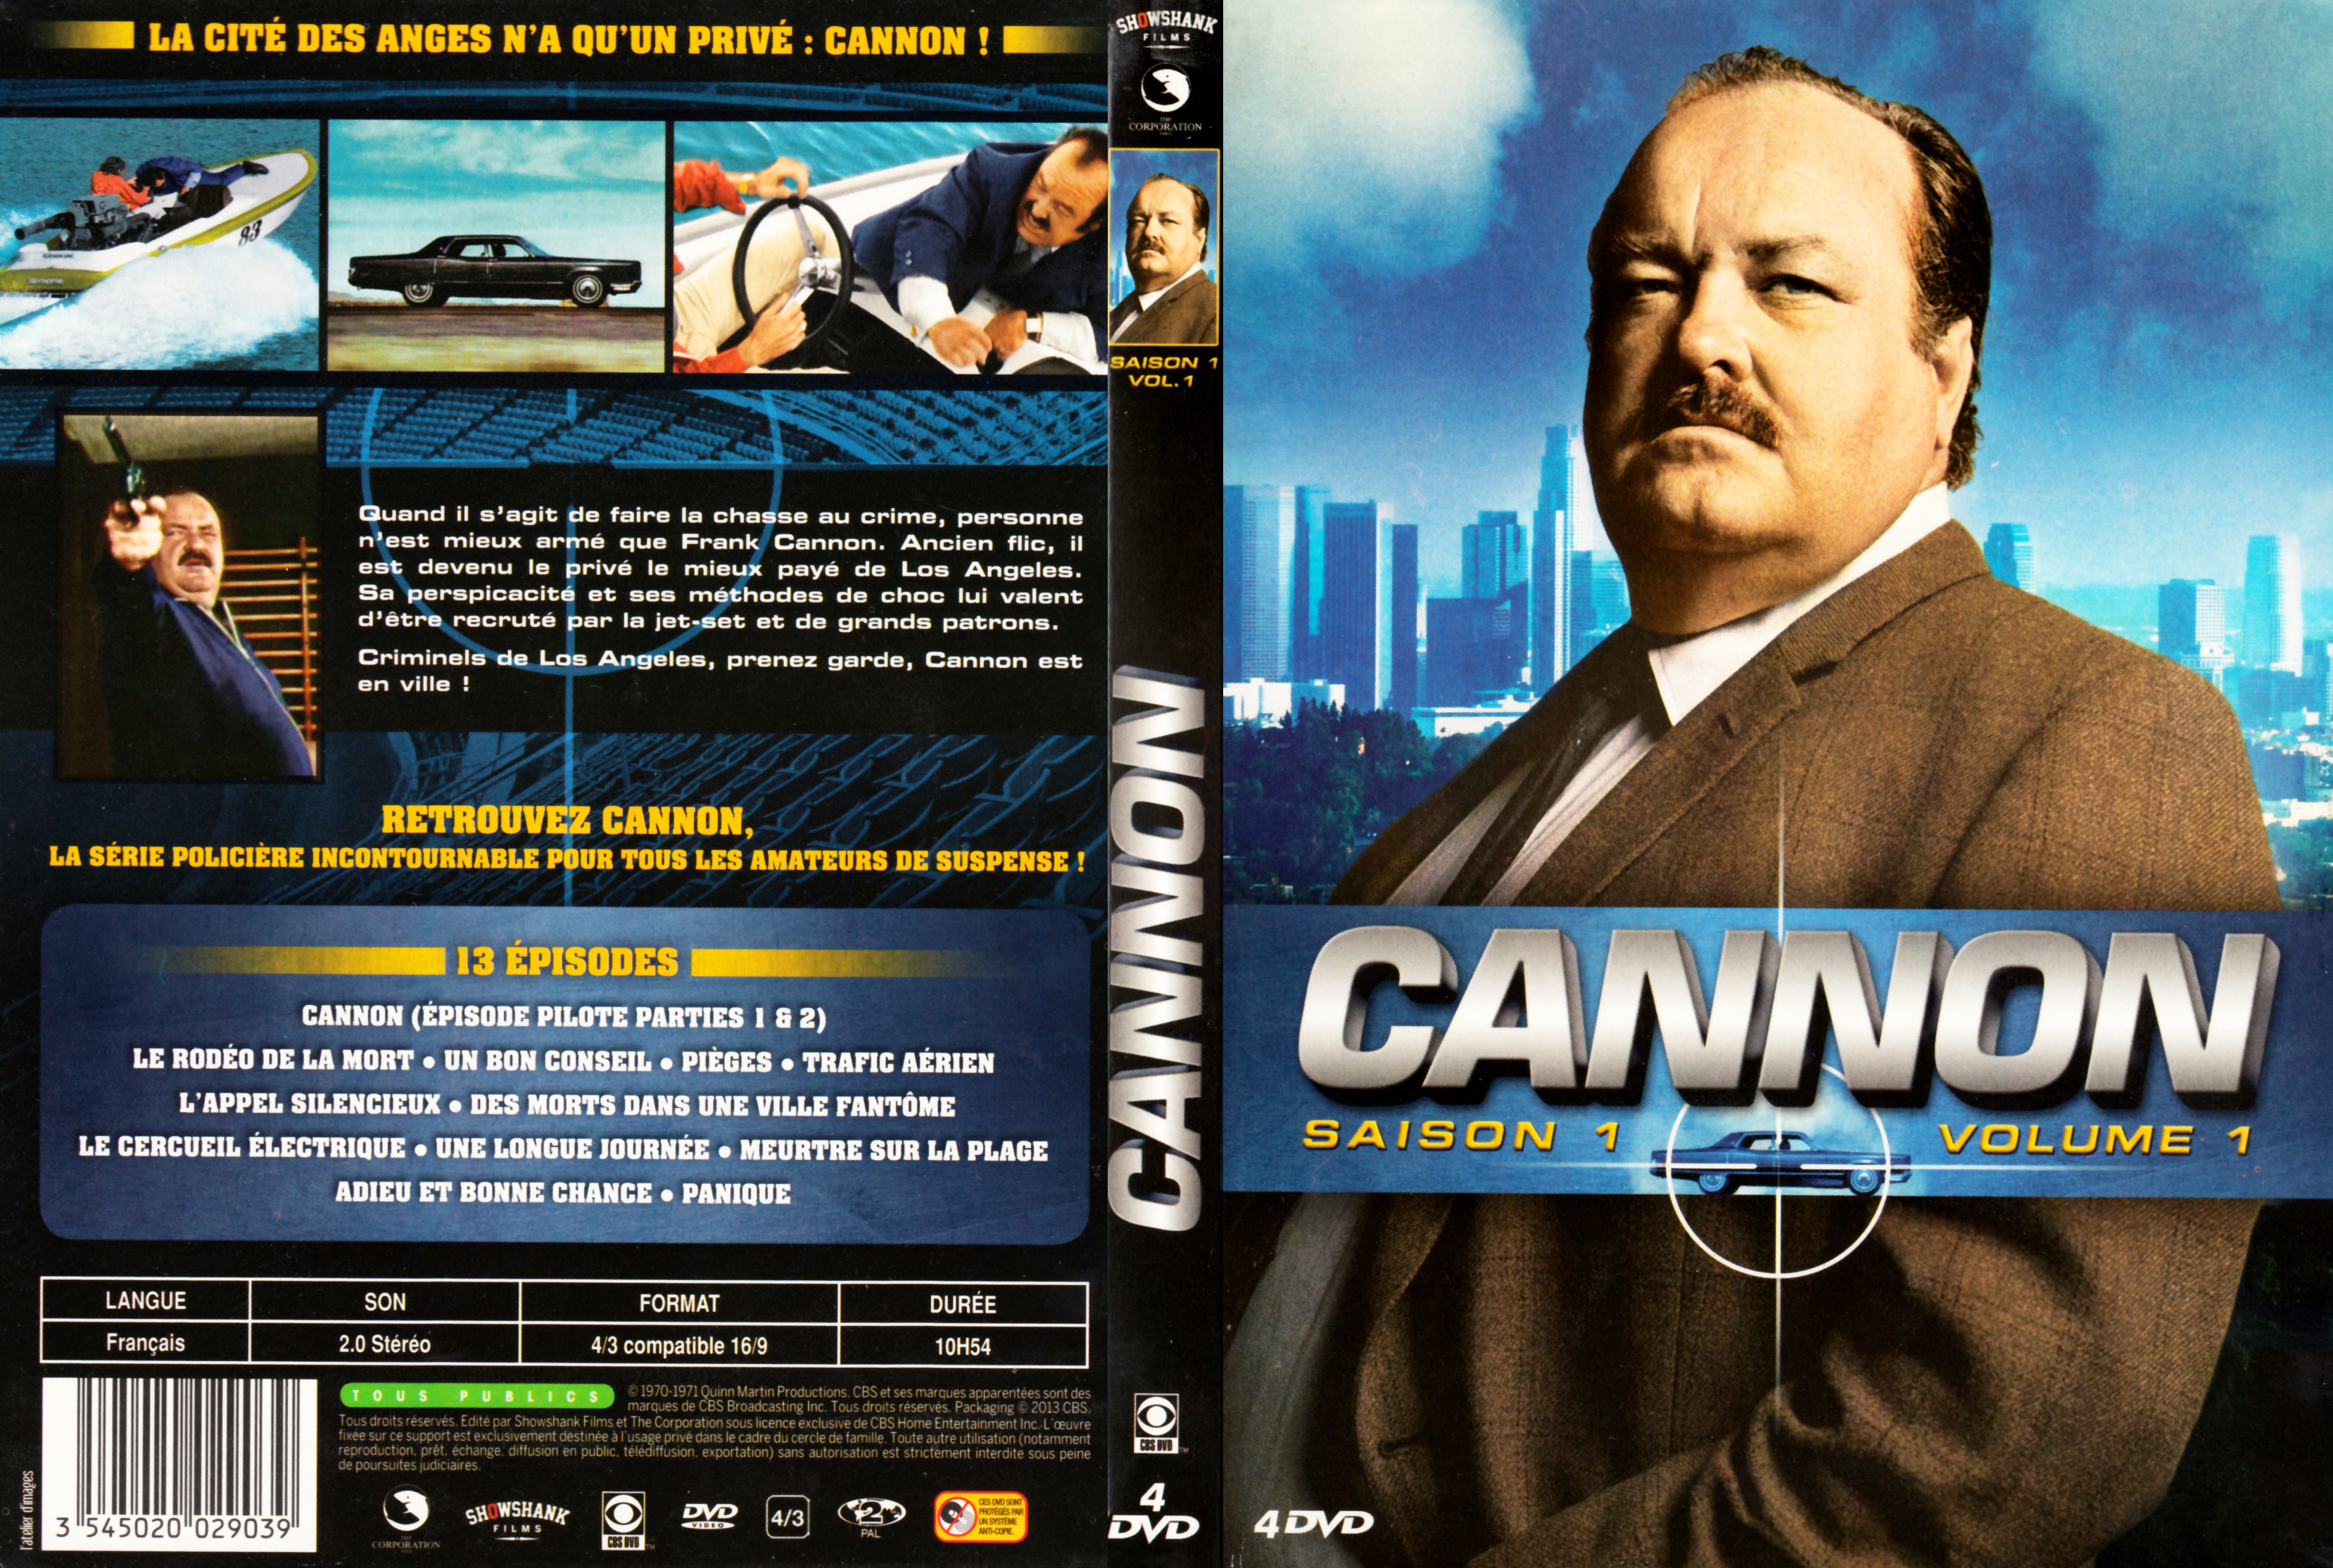 Jaquette DVD Cannon Saison 1 Vol 1